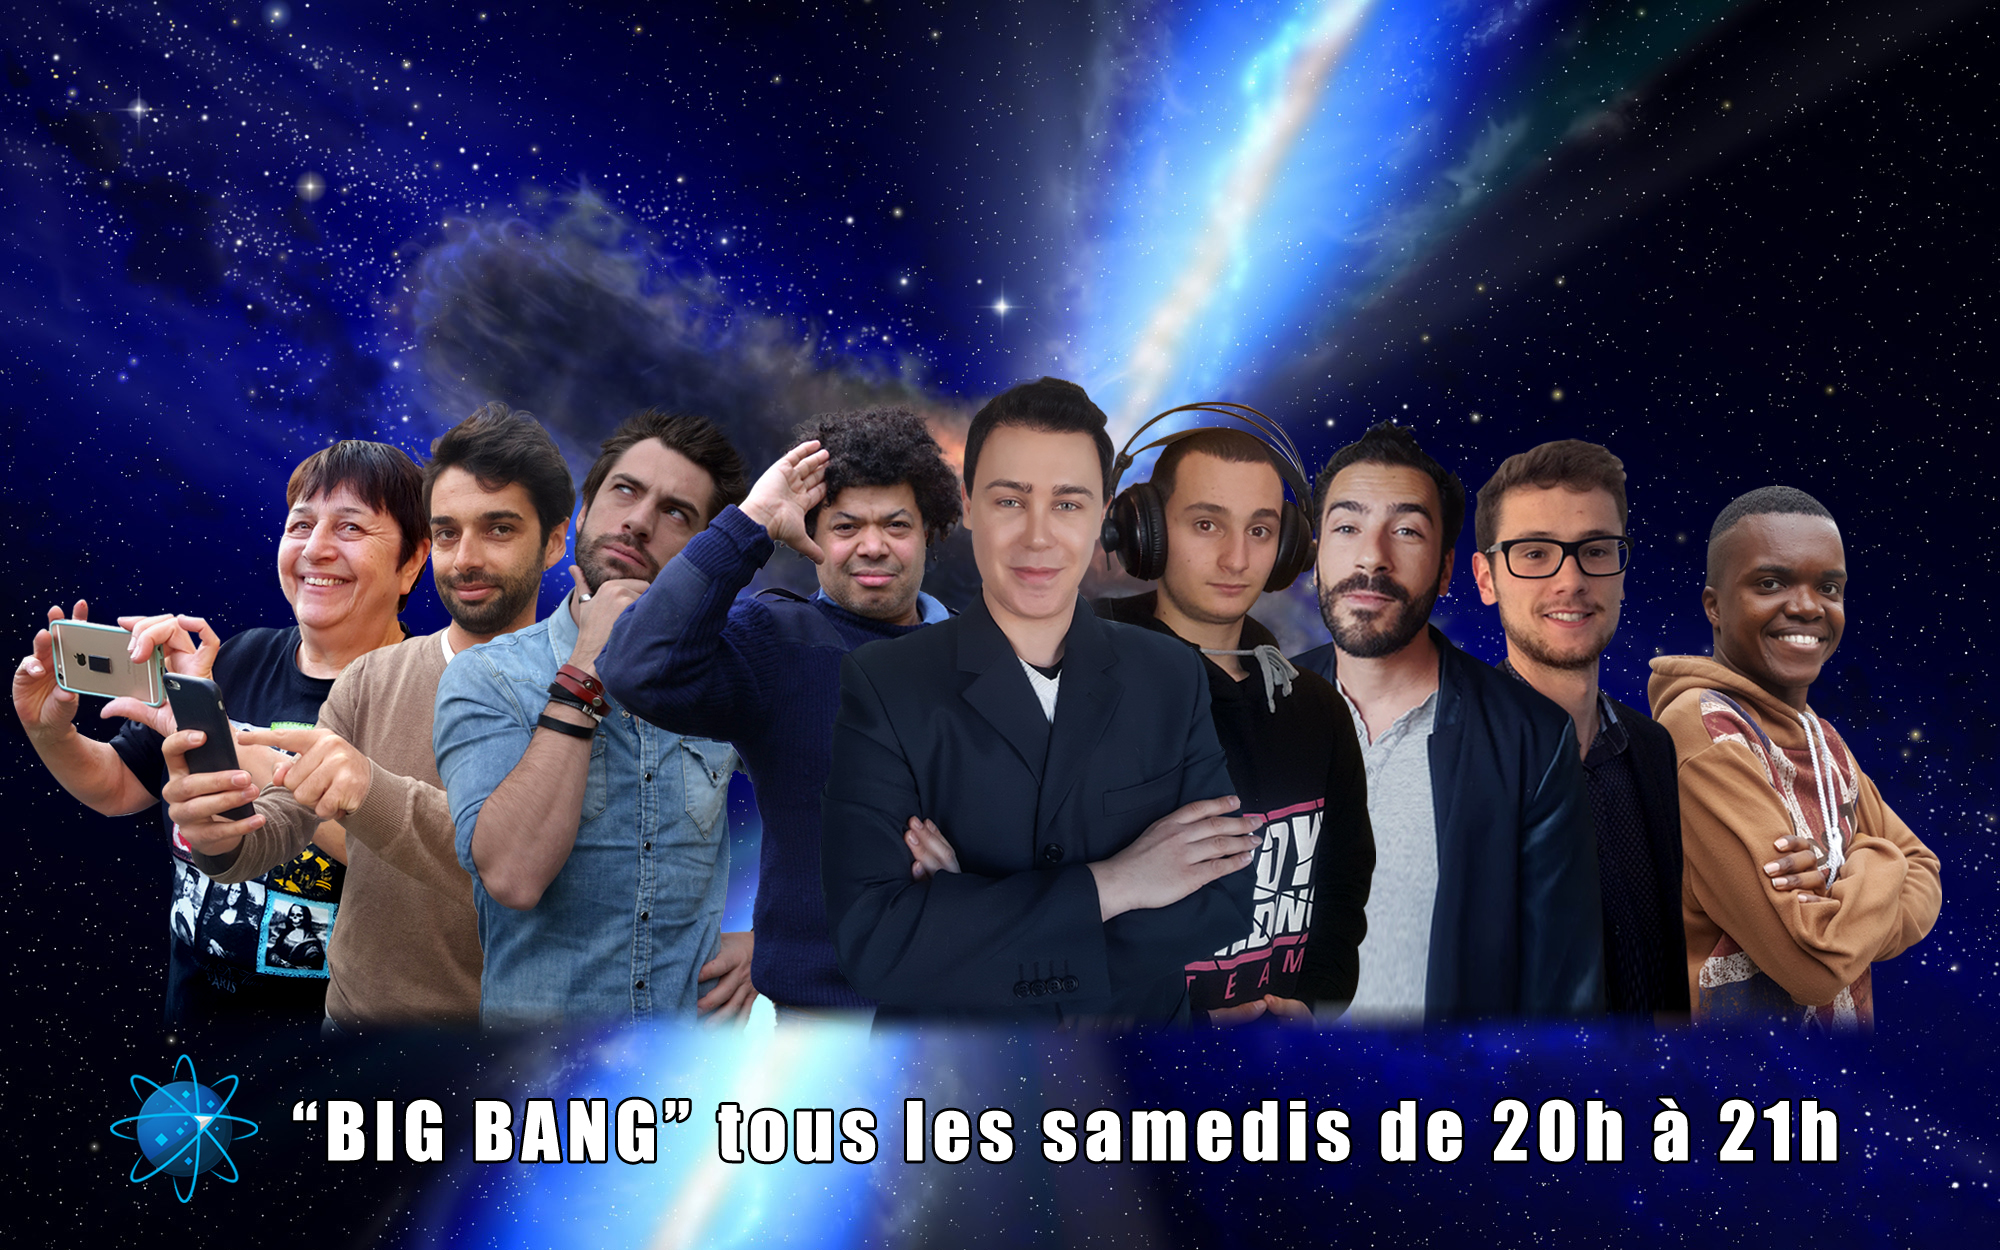 La nouvelle Big Bang team : Dany 2, Ronan, Freddy, Petit Manu, Didier, Dany, Nono, Pierre et kevin